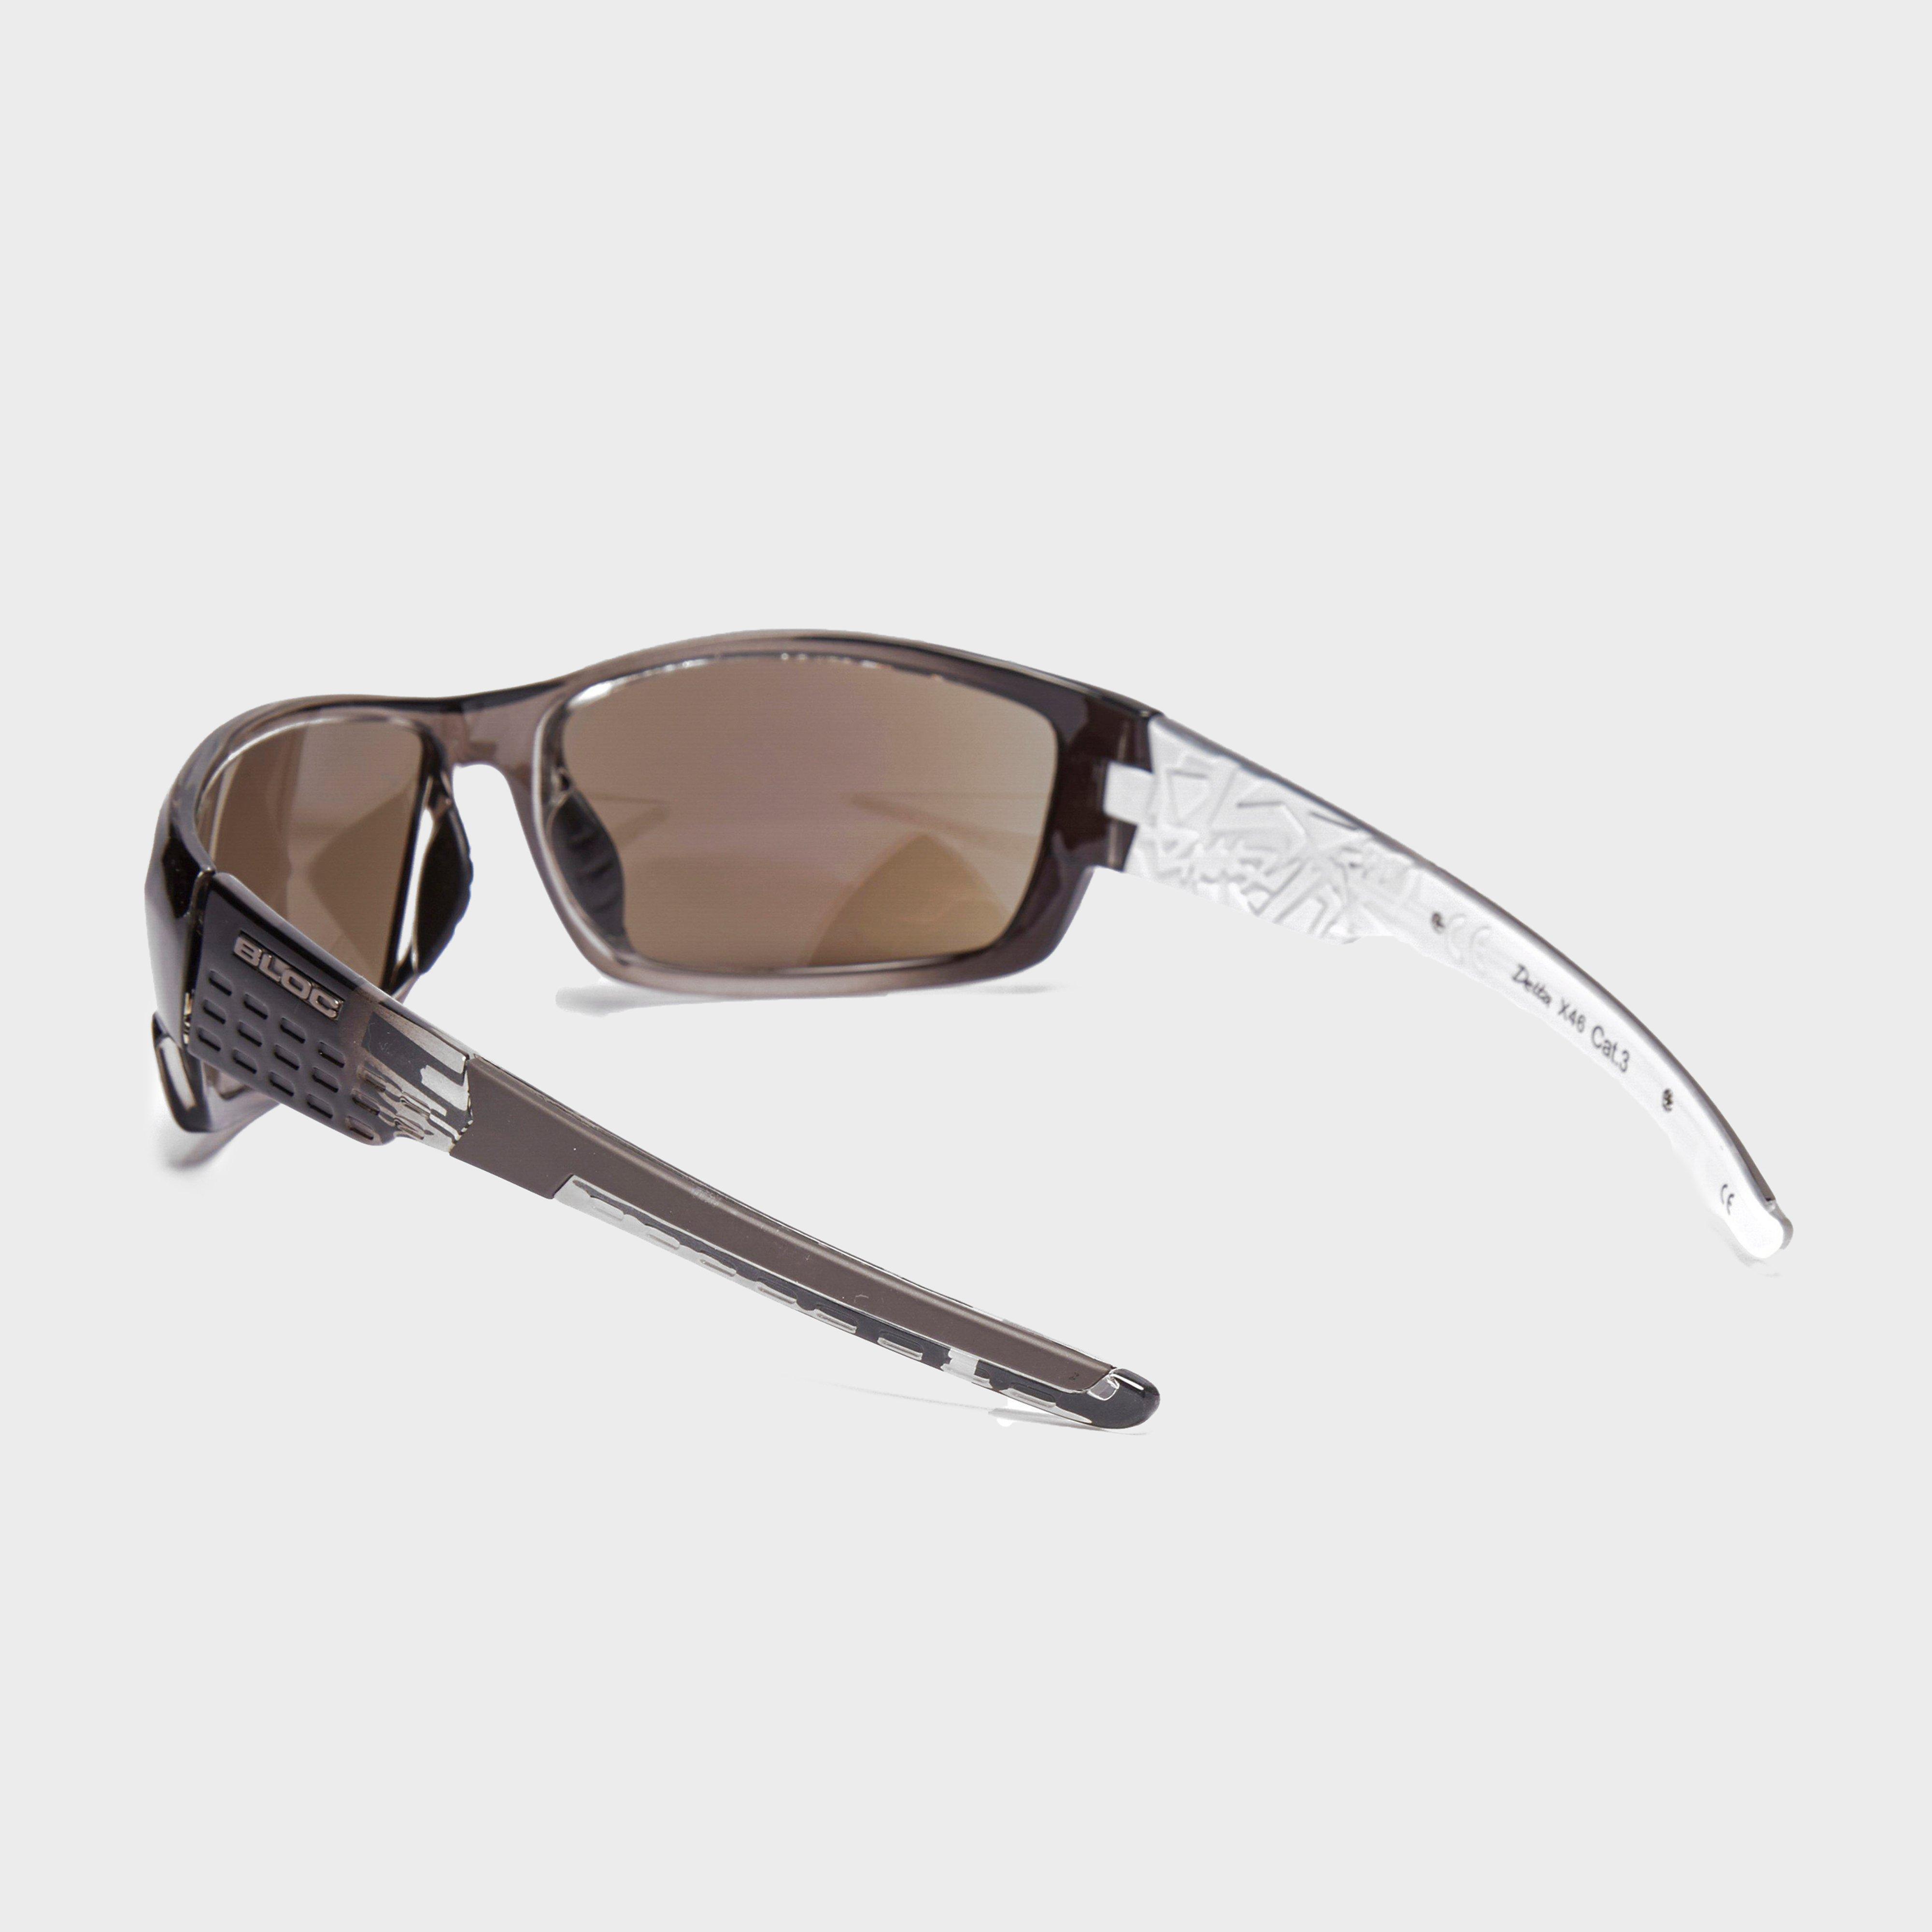 Bloc Delta X46 Sunglasses Review